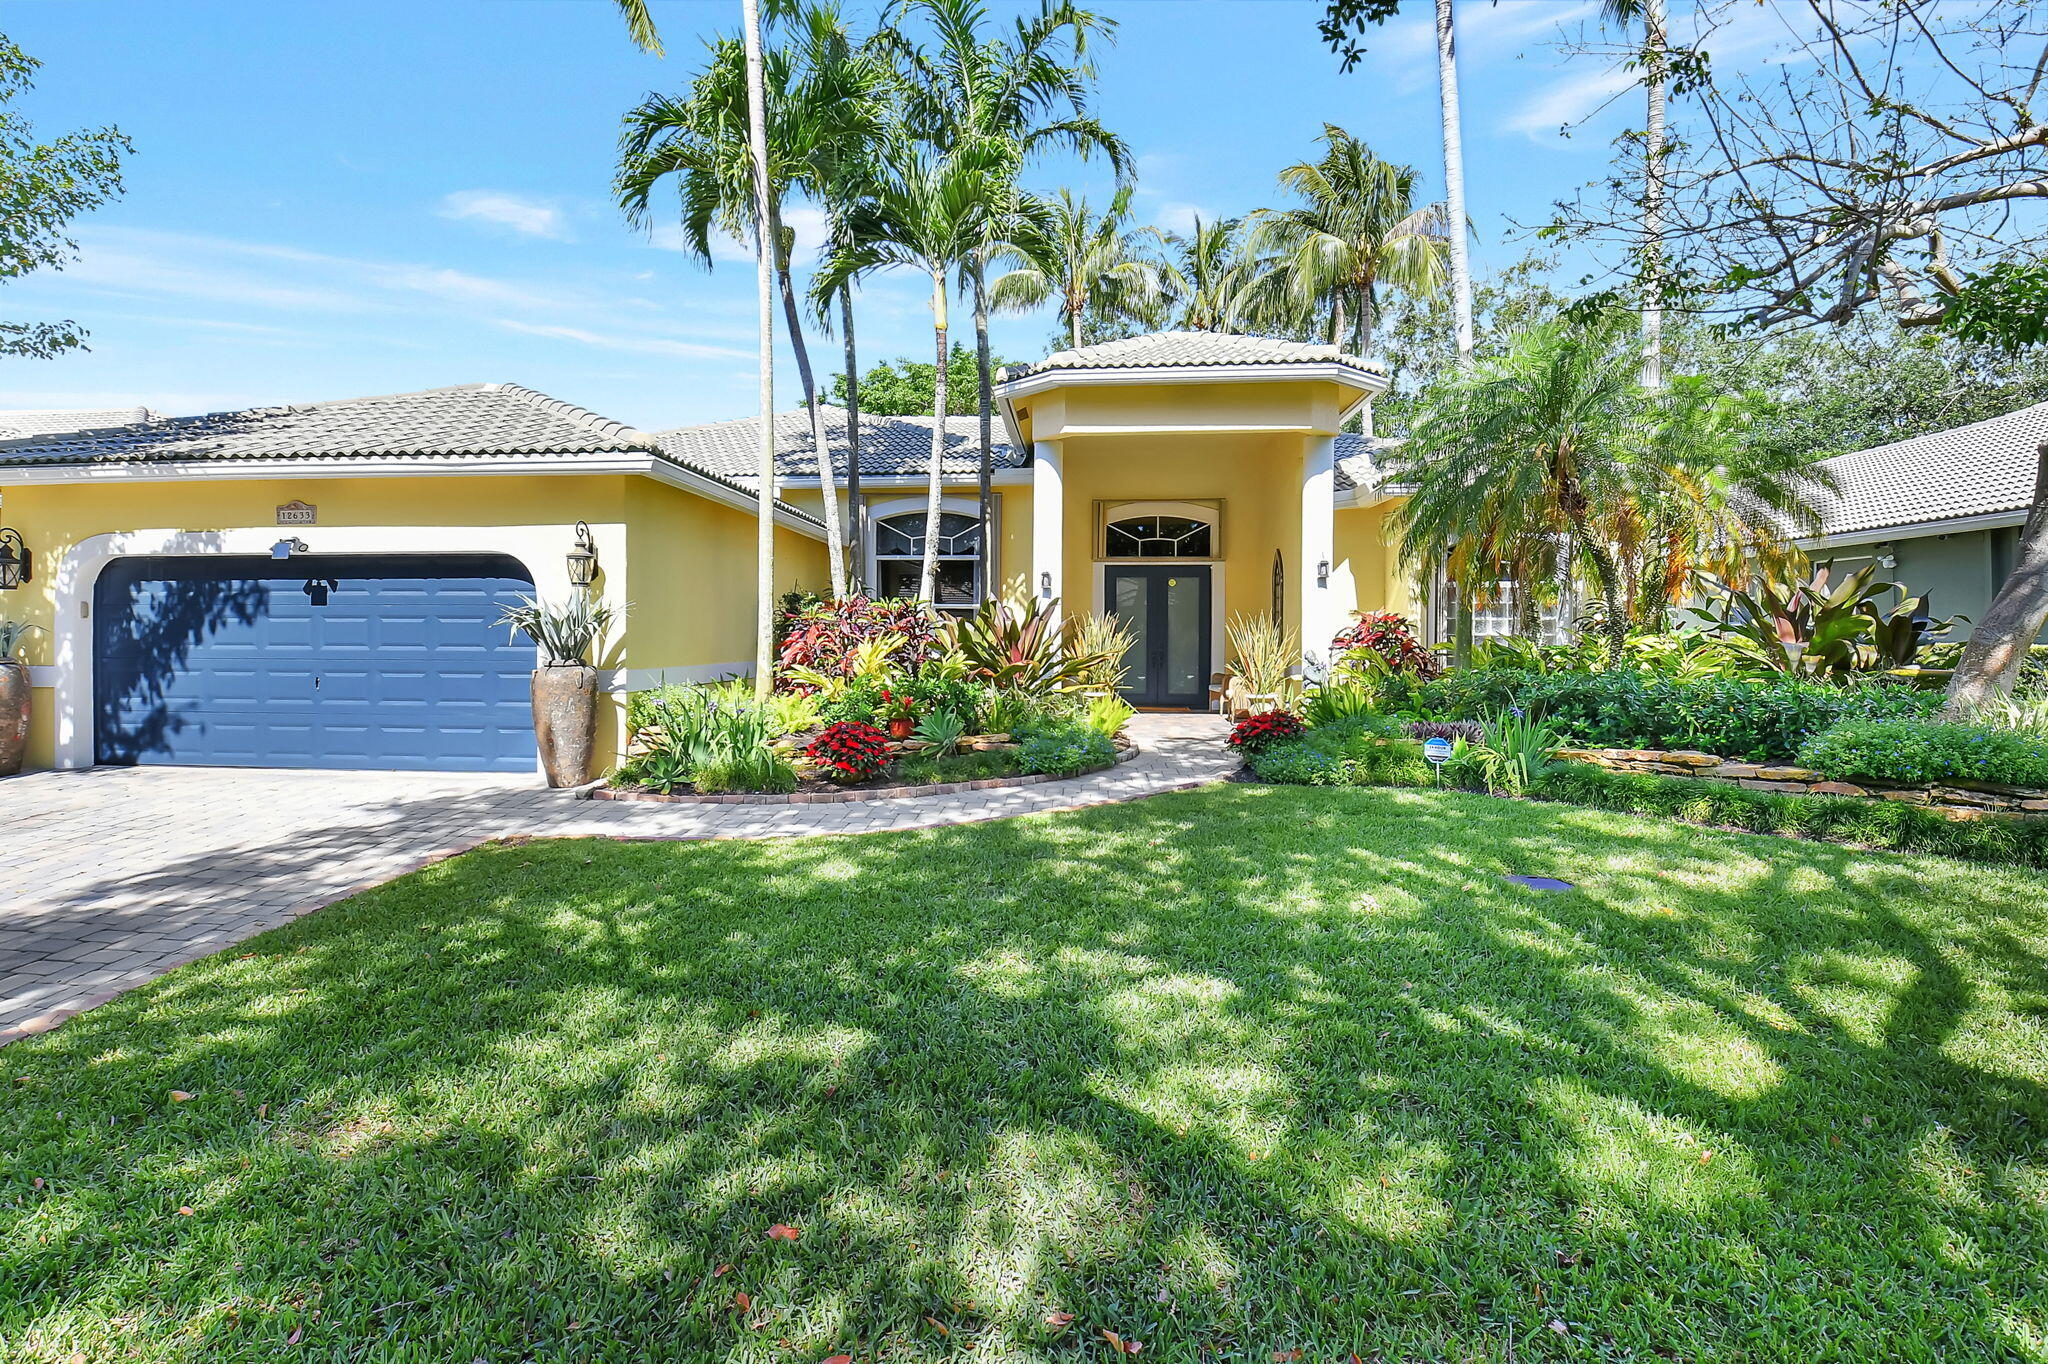 Property for Sale at 12633 Oak Run Court, Boynton Beach, Palm Beach County, Florida - Bedrooms: 4 
Bathrooms: 3  - $859,900